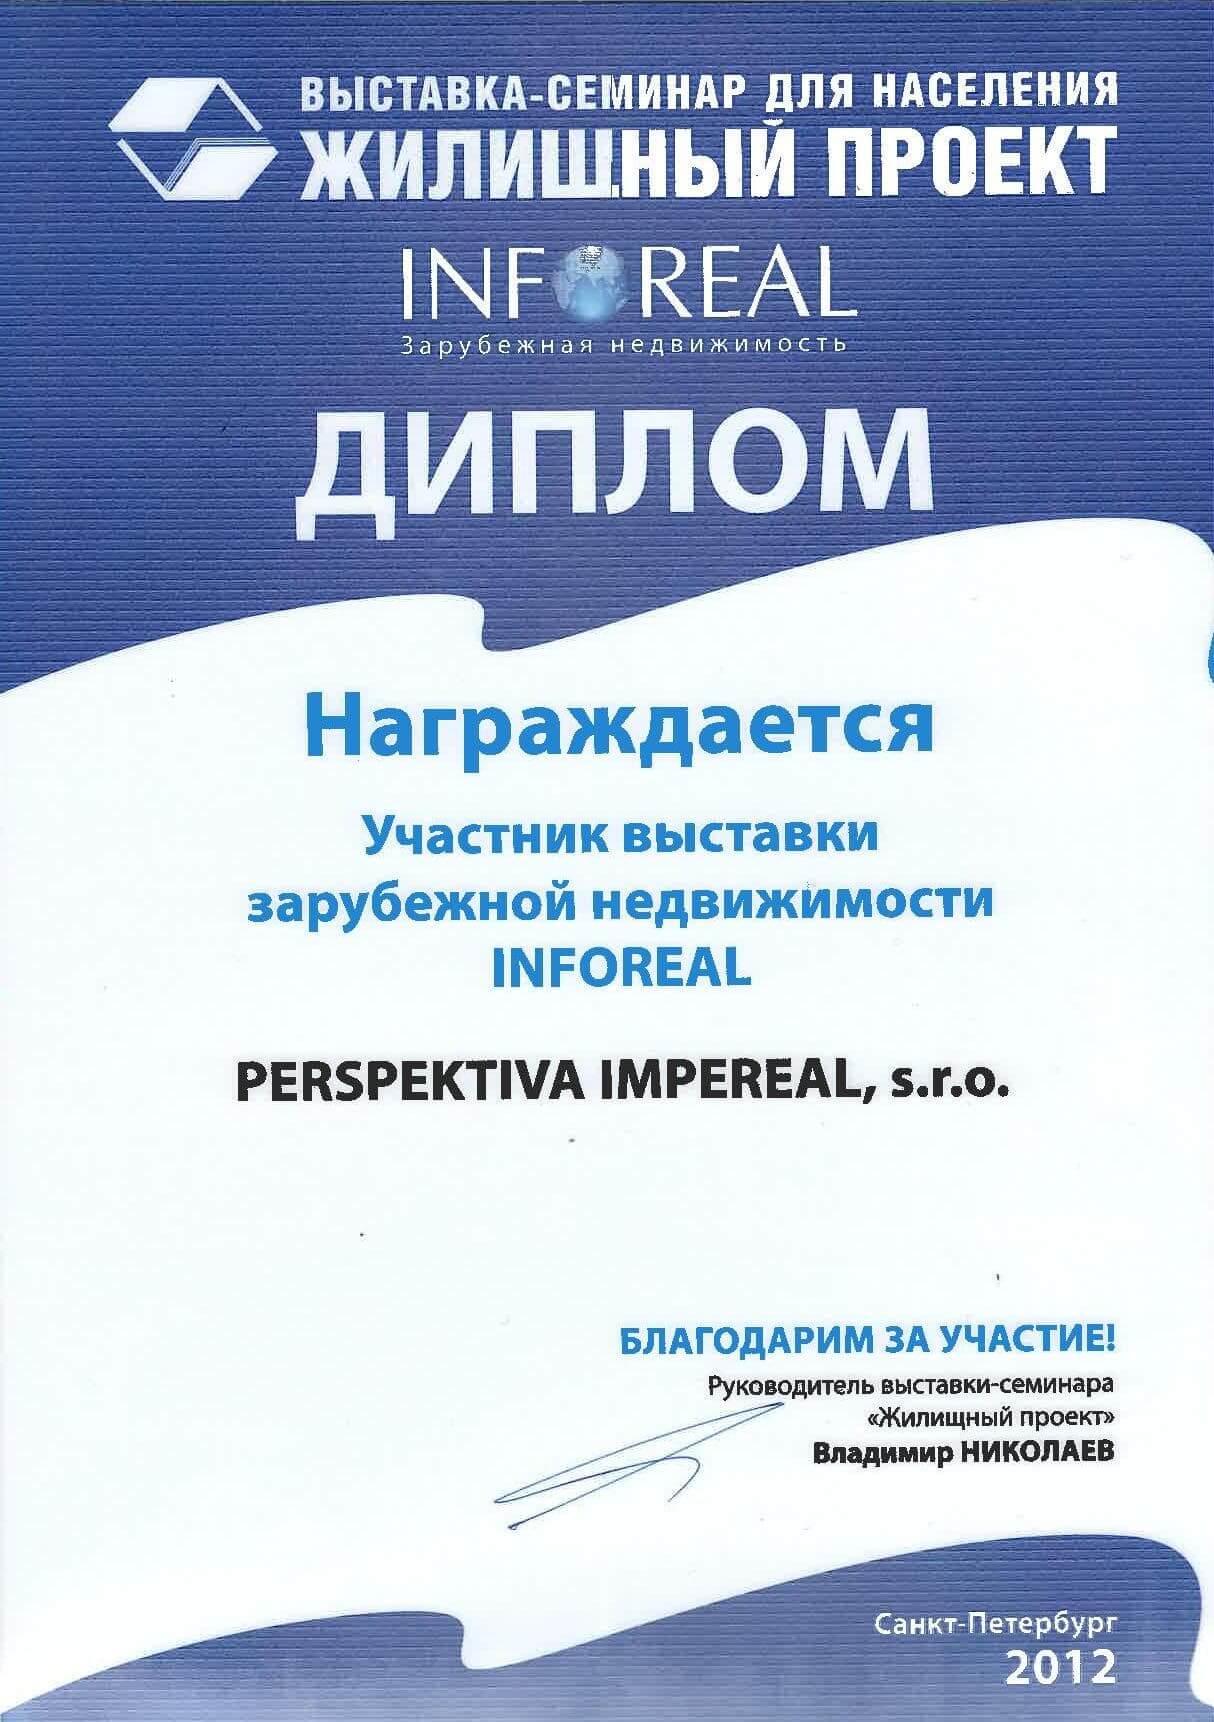 Участие в выставке международной недвижимости в Санкт-Петербурге